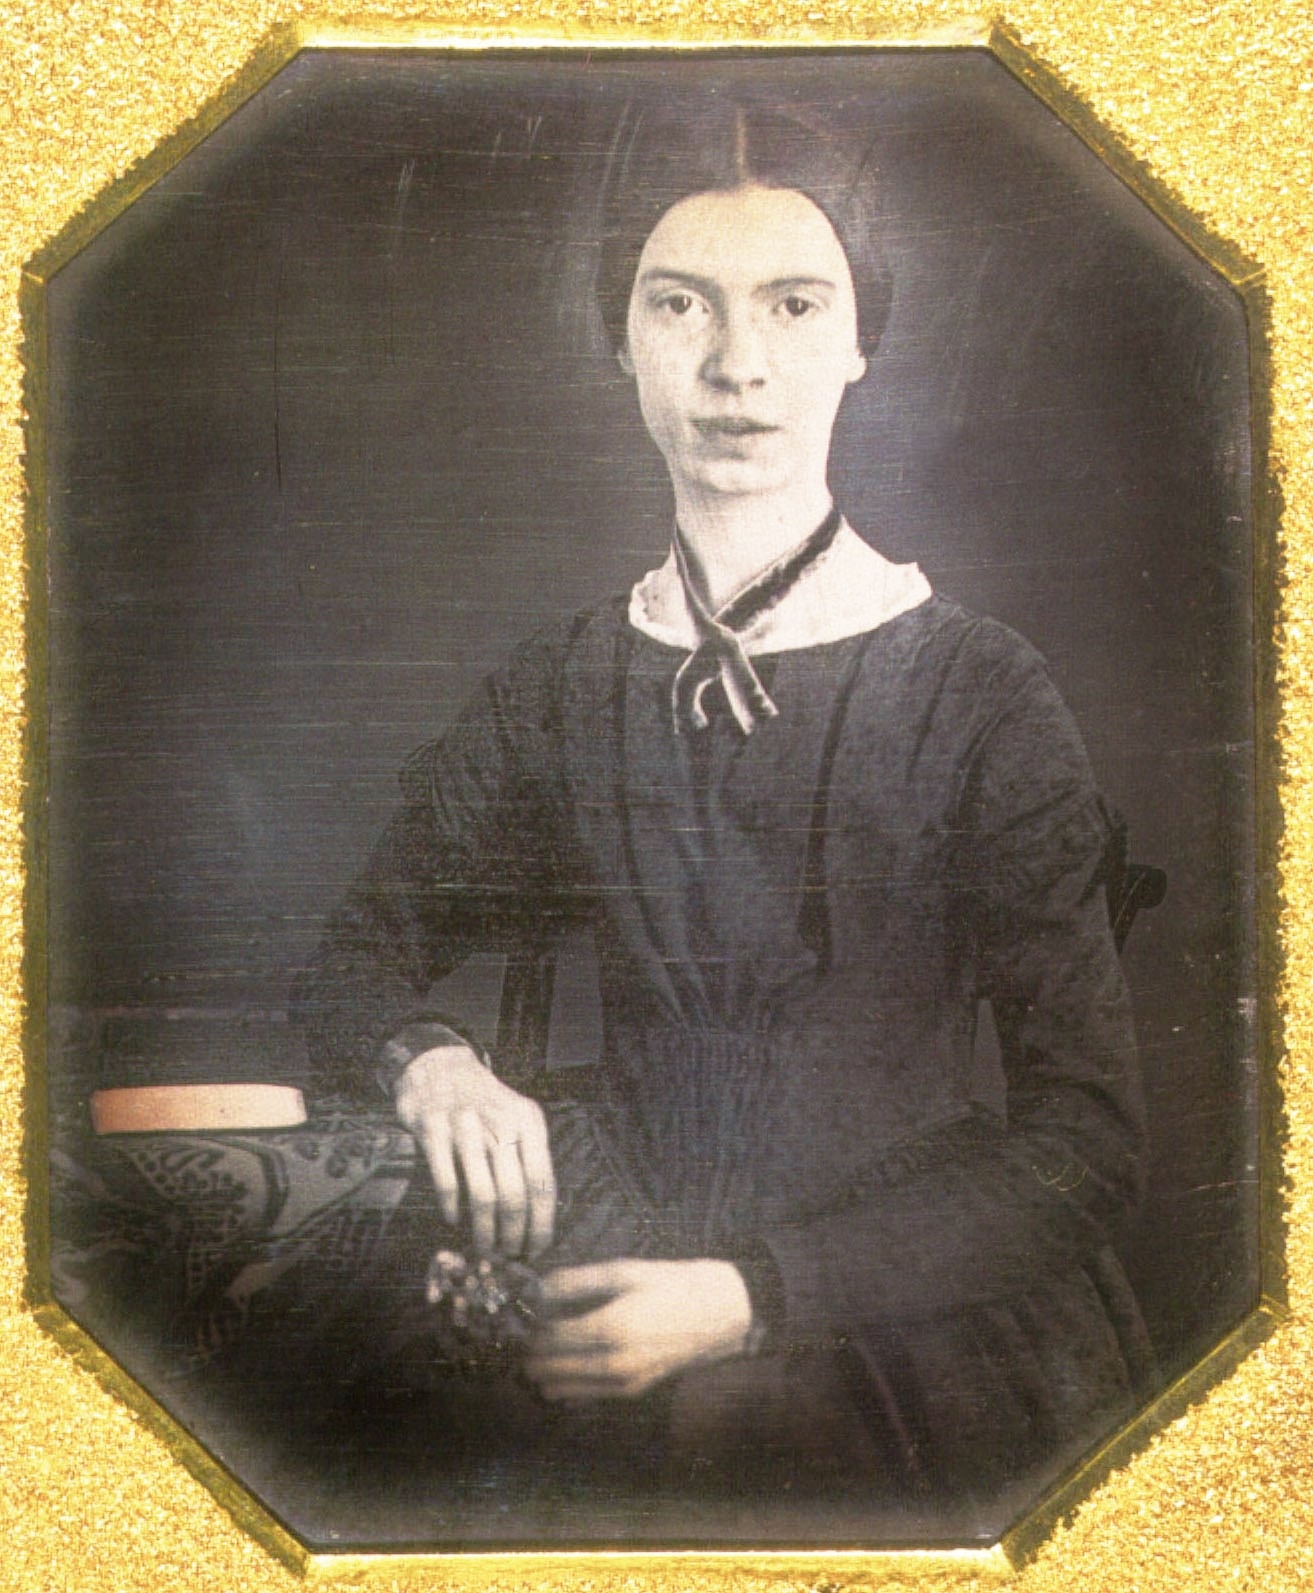 Emily-Dickinson-daguerreotype-1847 (1).jpg